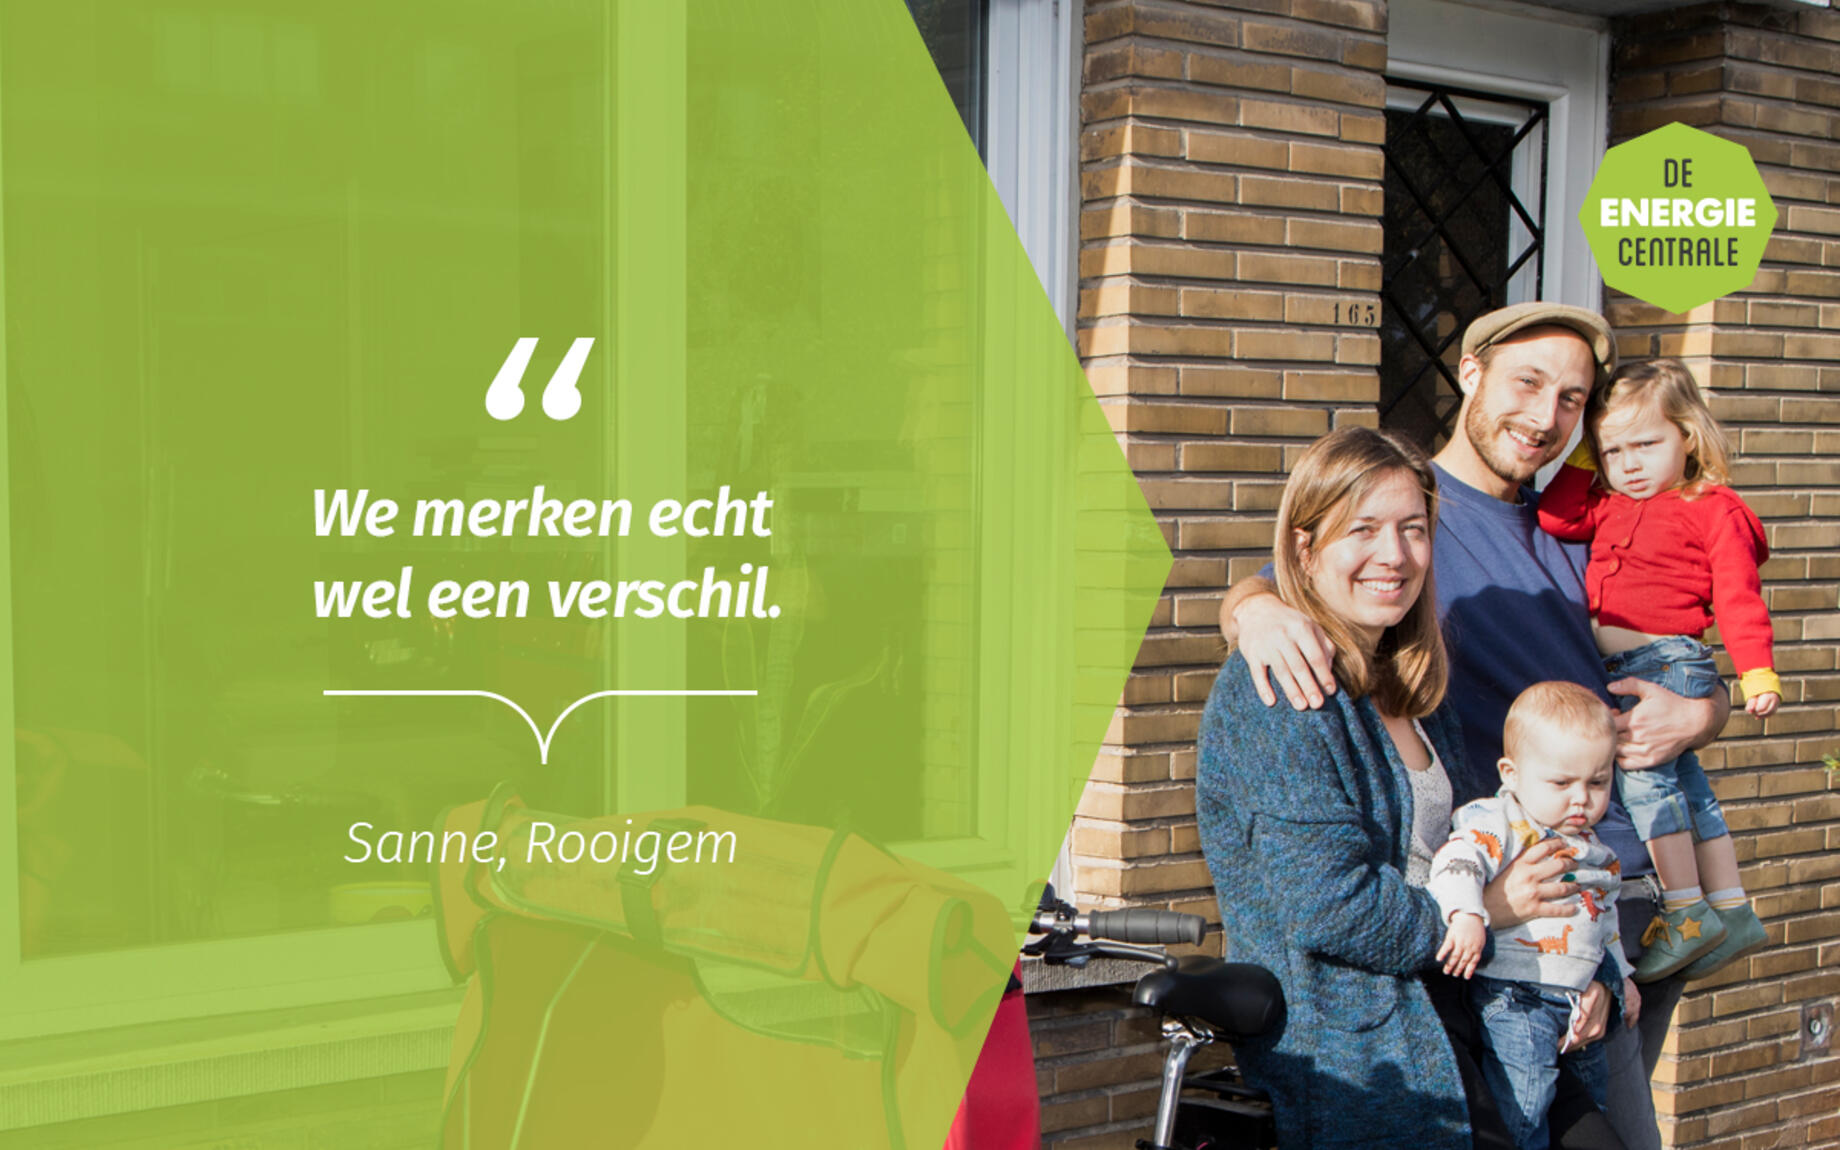 Sanne en Nathalie renoveerden hun woning in de Rooigemwijk